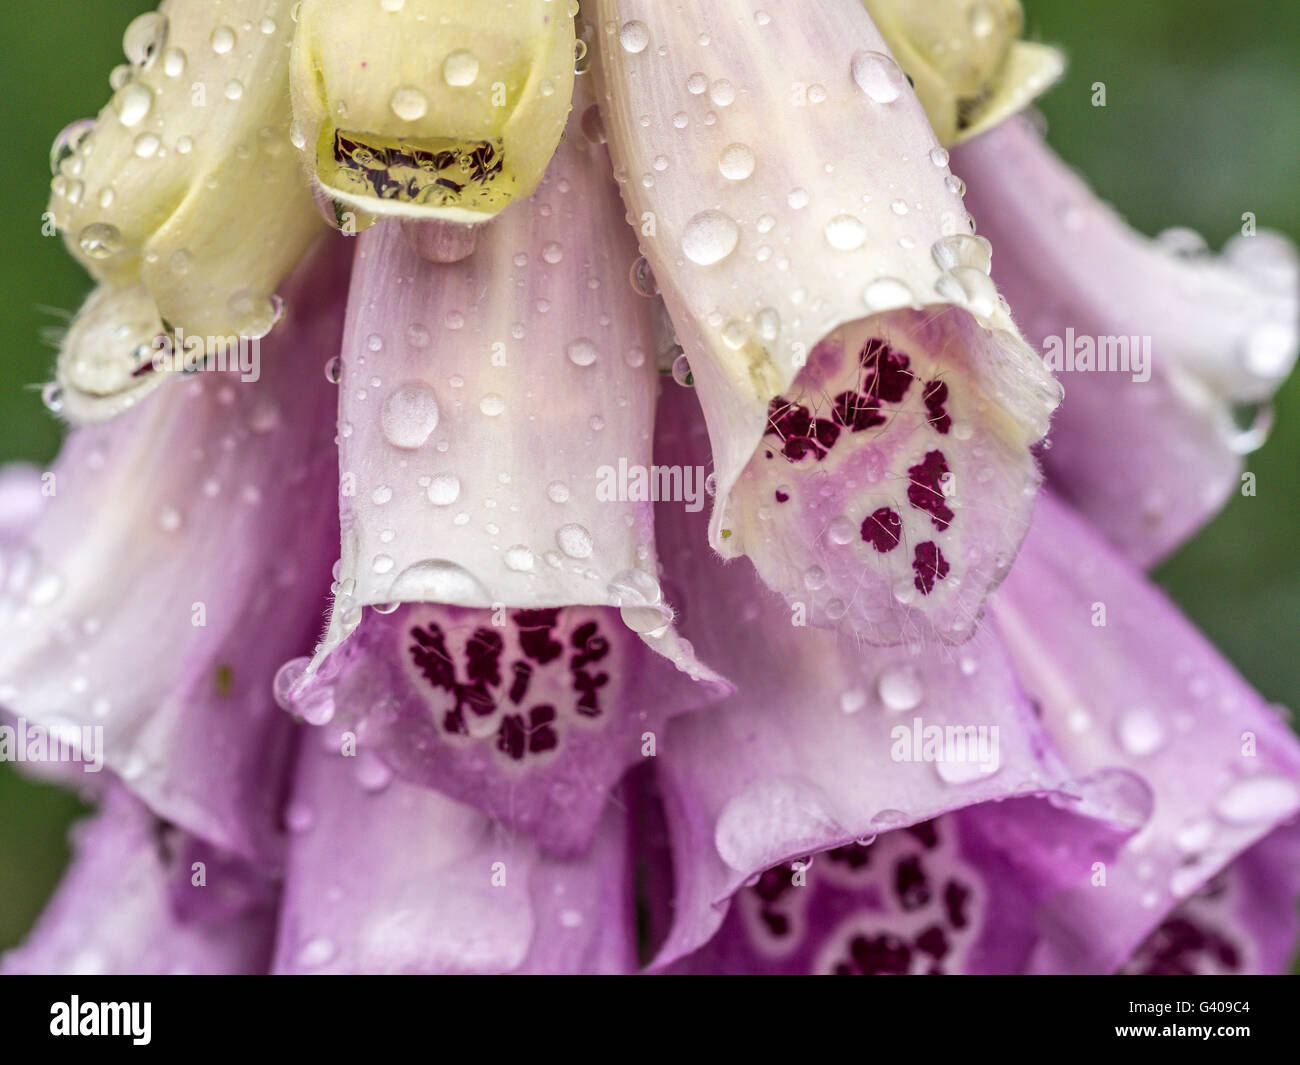 Digitalis purpurea,foxglove, comune foxglove, viola foxglove o lady del guanto è una specie di fioritura delle piante Foto Stock